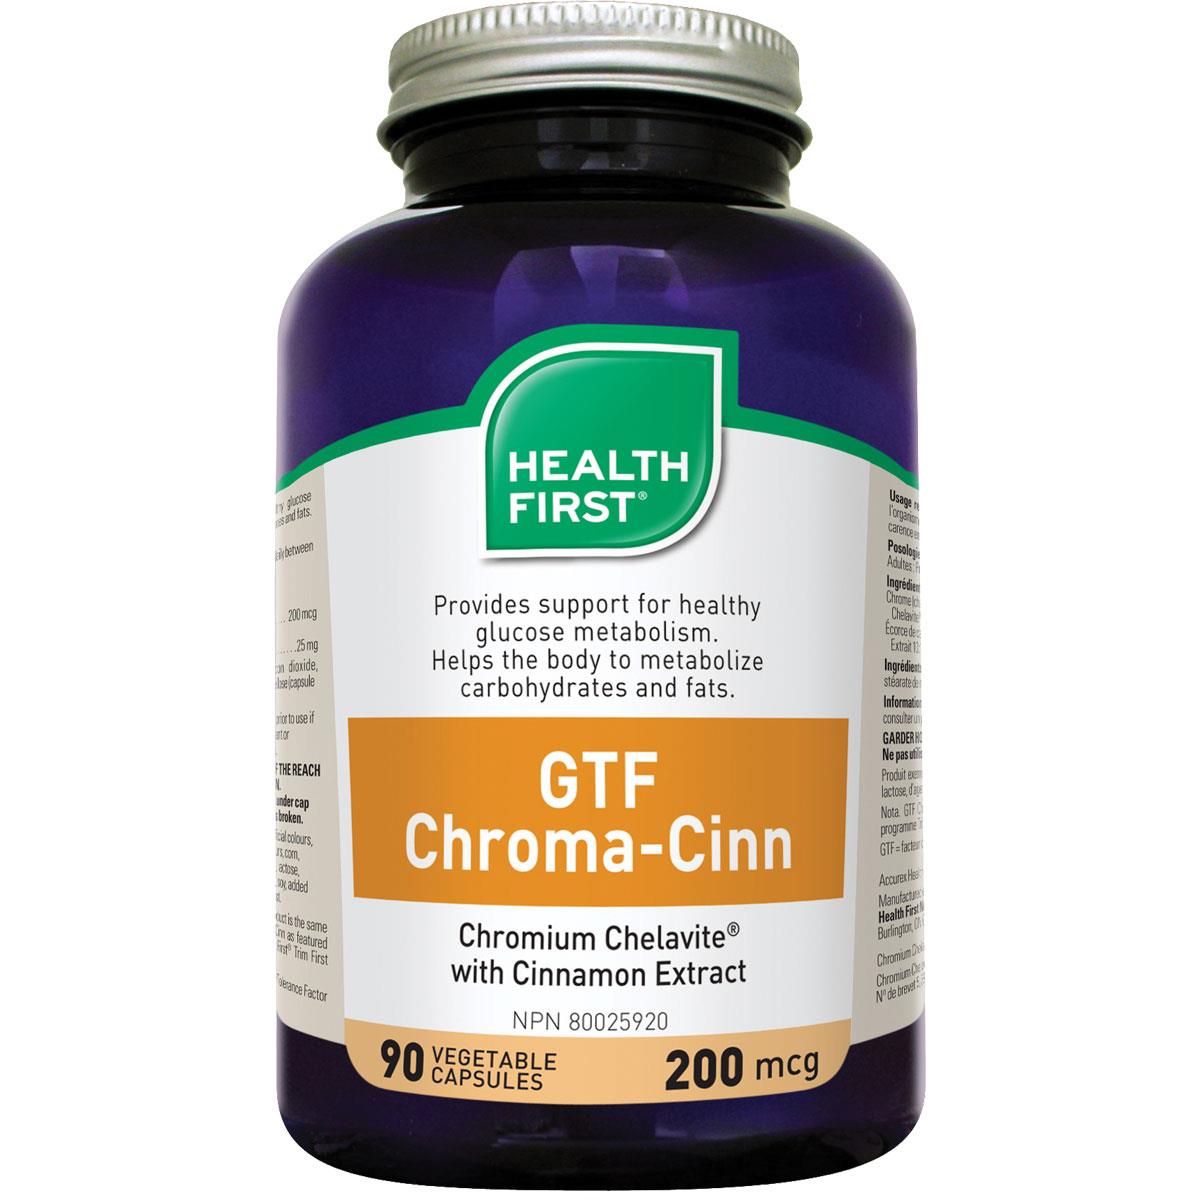 Health First GTF Chroma-Cinn, 200mcg - Homegrown Foods, Stony Plain